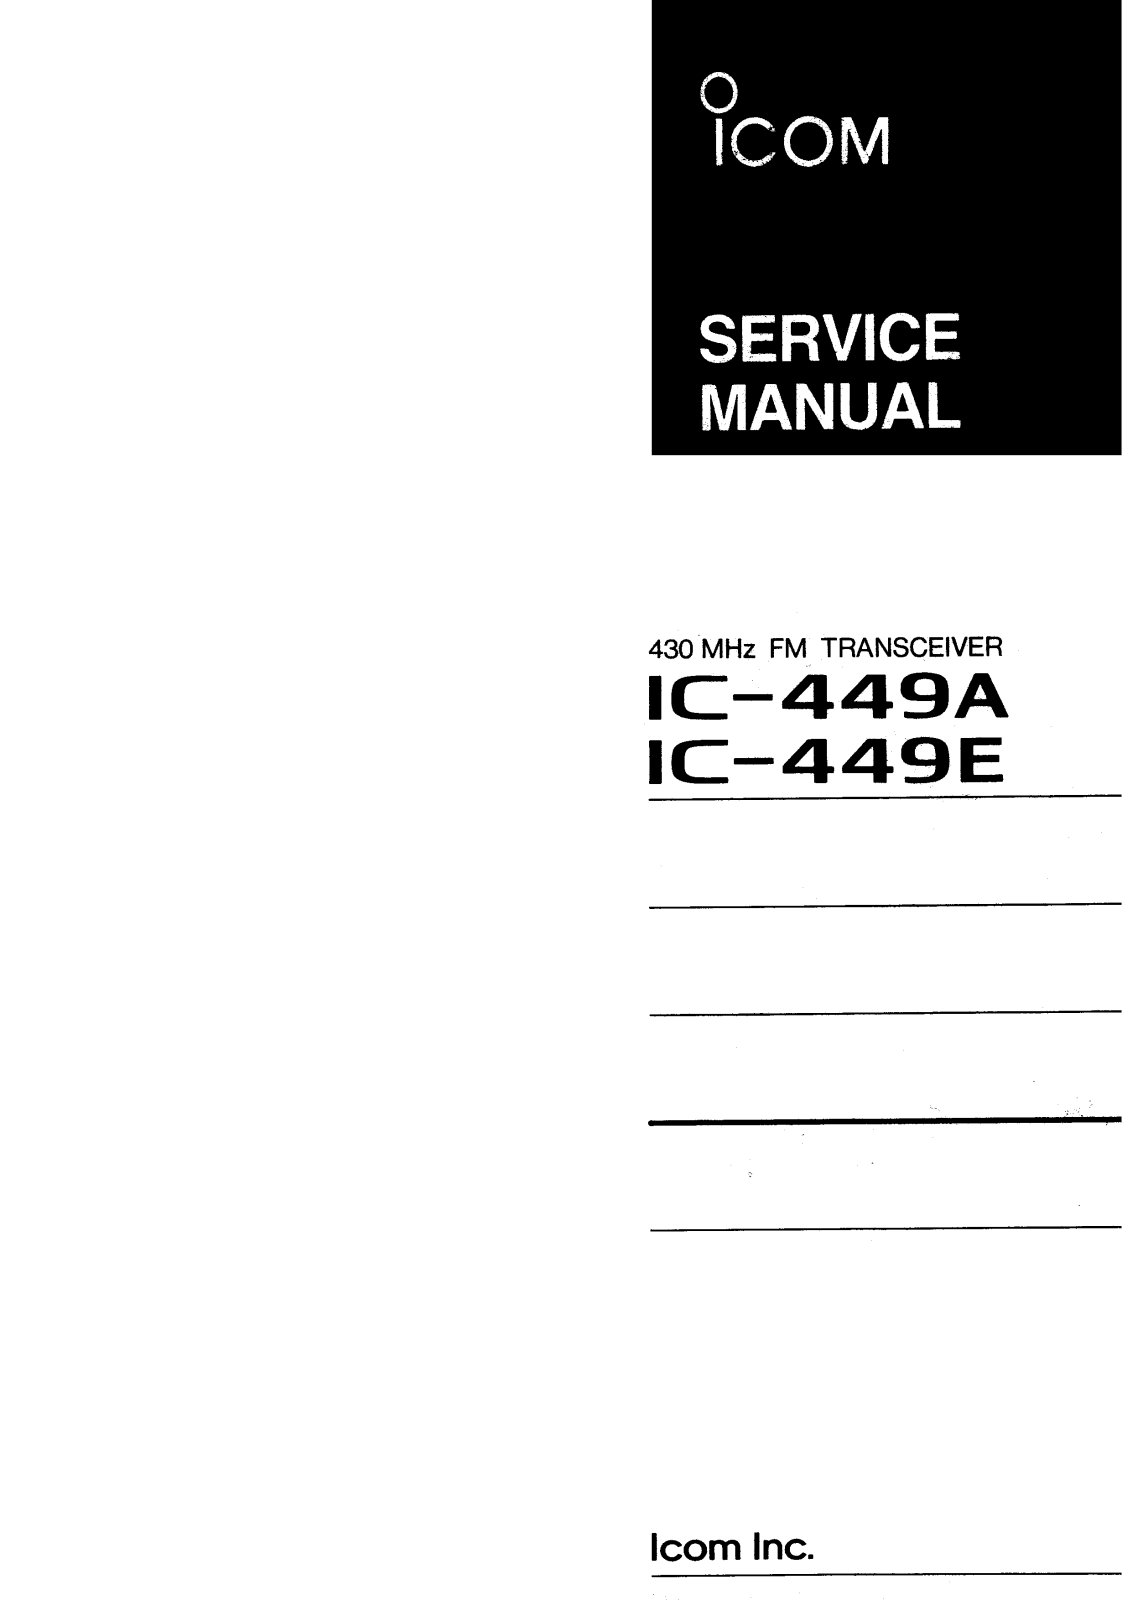 Icom IC-449E, IC-449A Service Manual